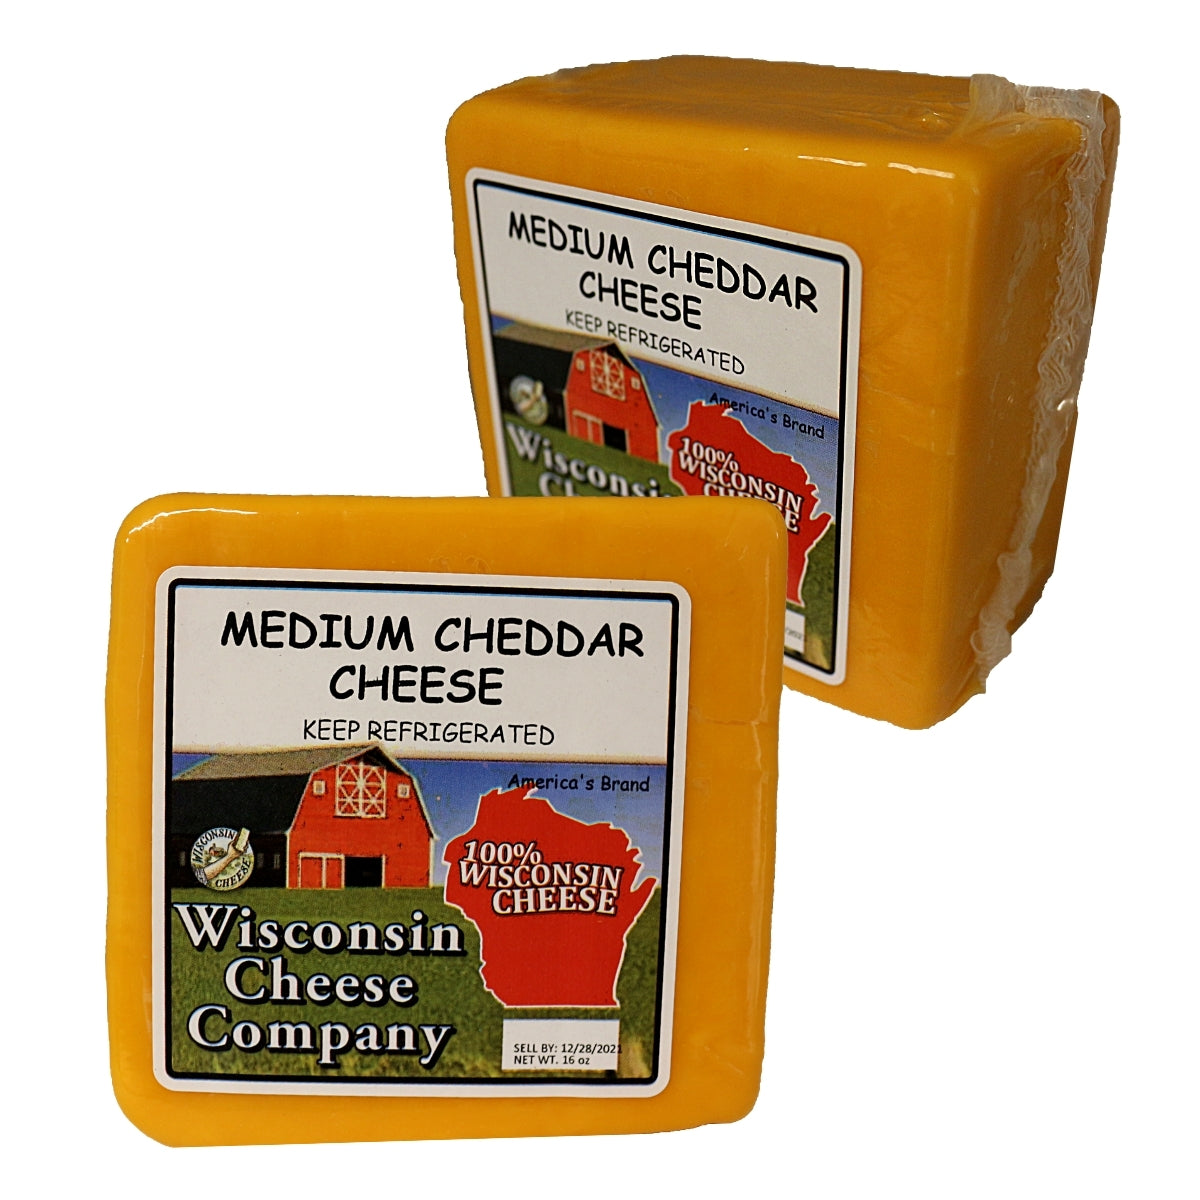 Two blocks of Medium Cheddar Cheese